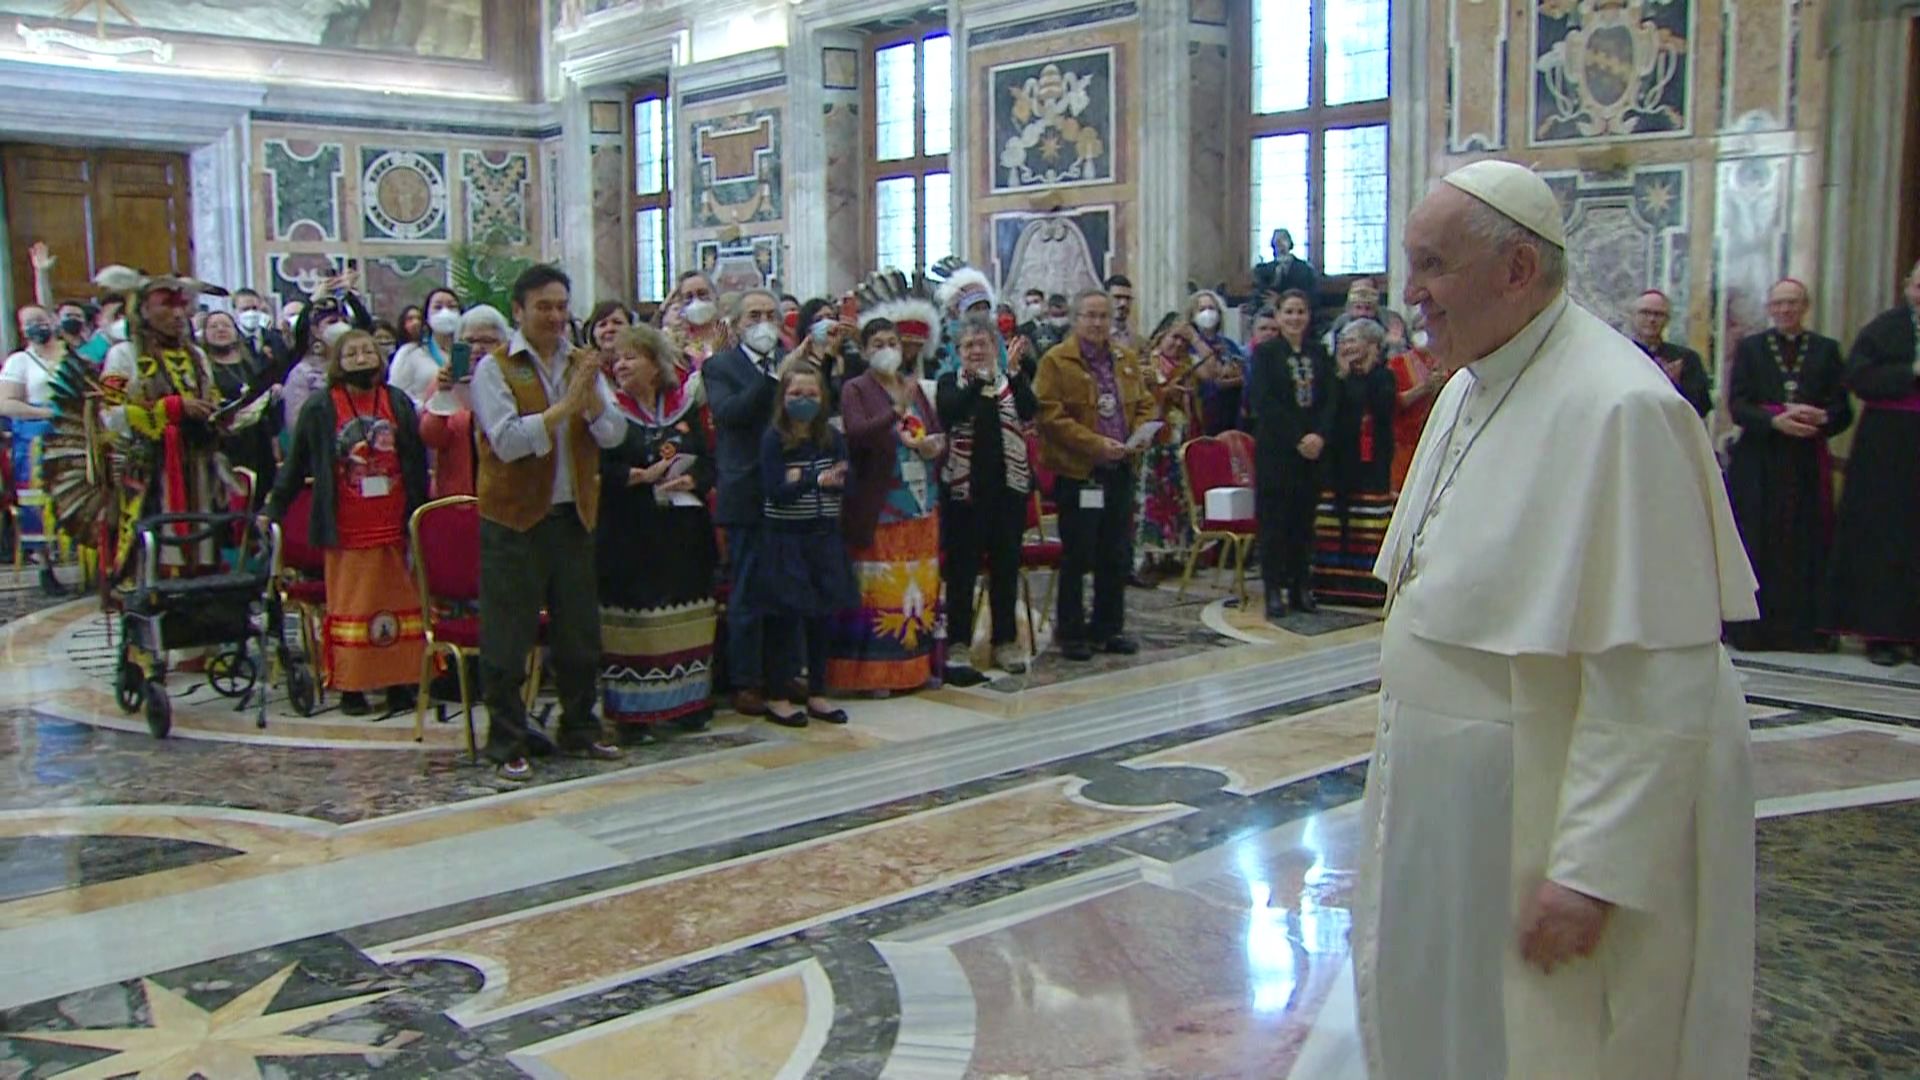 Réception de délégations autochtones canadiennes au Vatican par le pape François – 1er février 2022